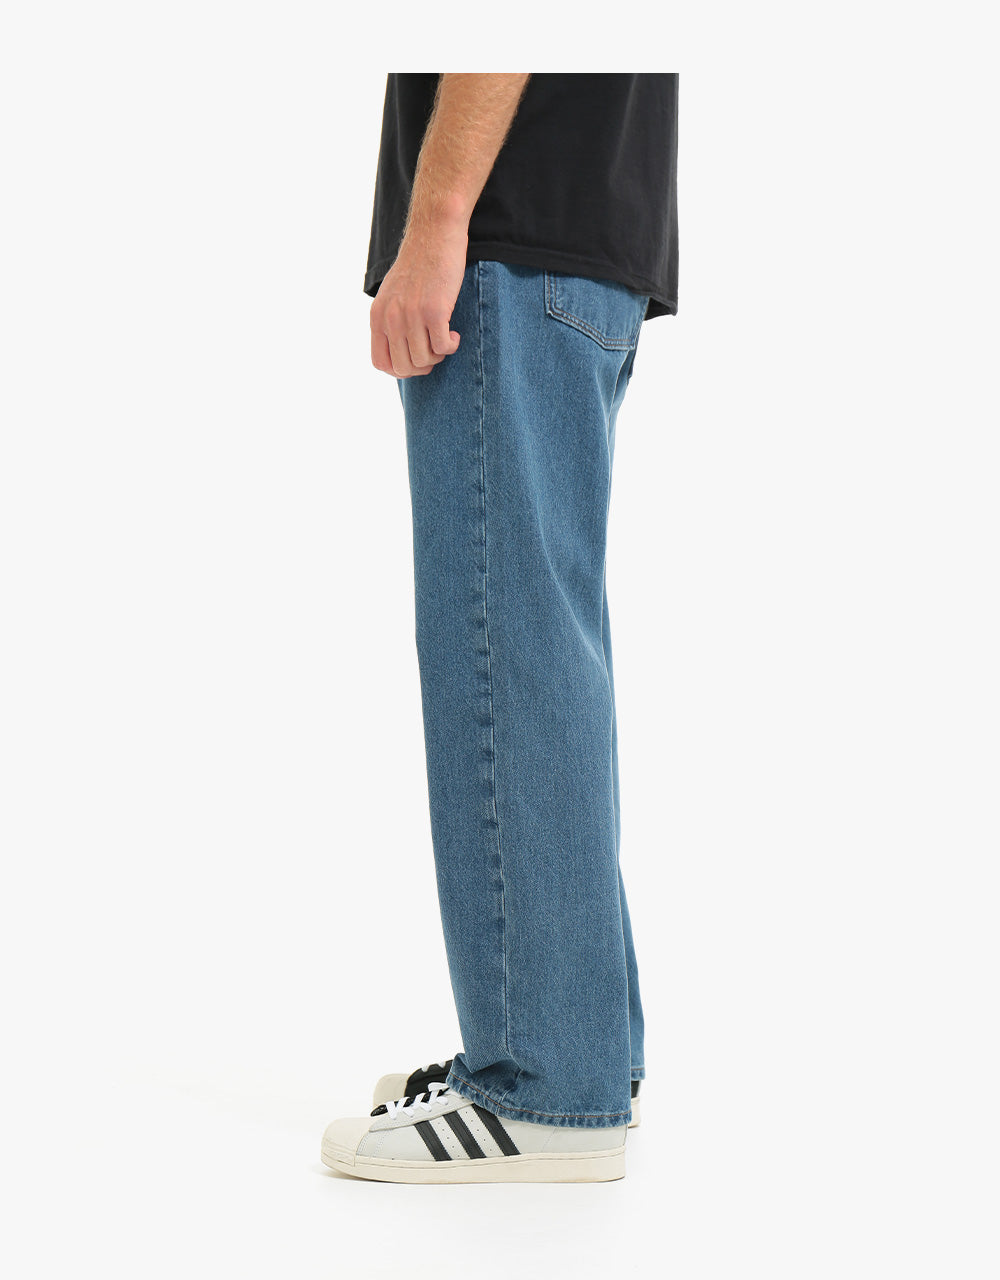 Levi's Skateboarding Baggy Denim Jeans - S&E Baker